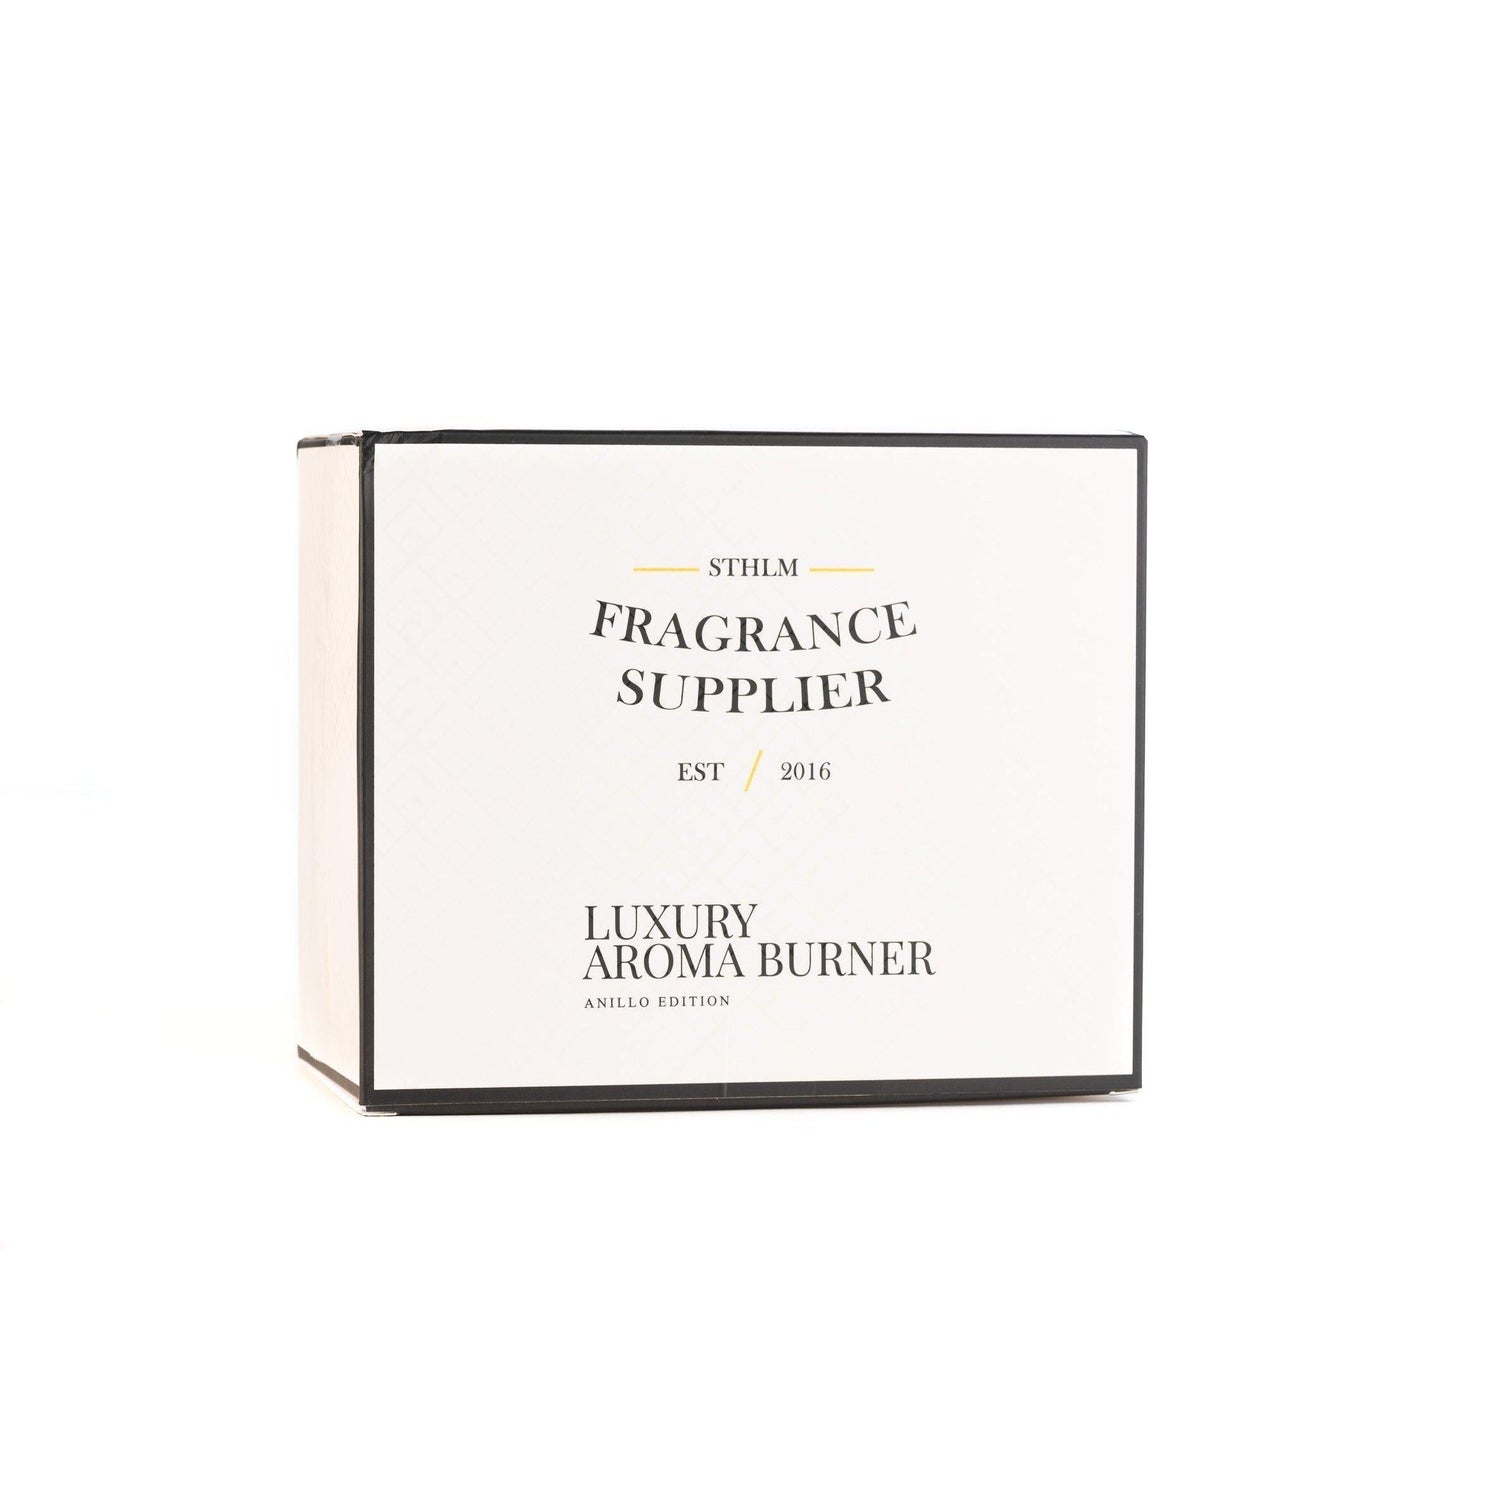 Aromalampa - Anillo Edition L-Aromalampa-Sthlm Fragrance Supplier-peaceofhome.se